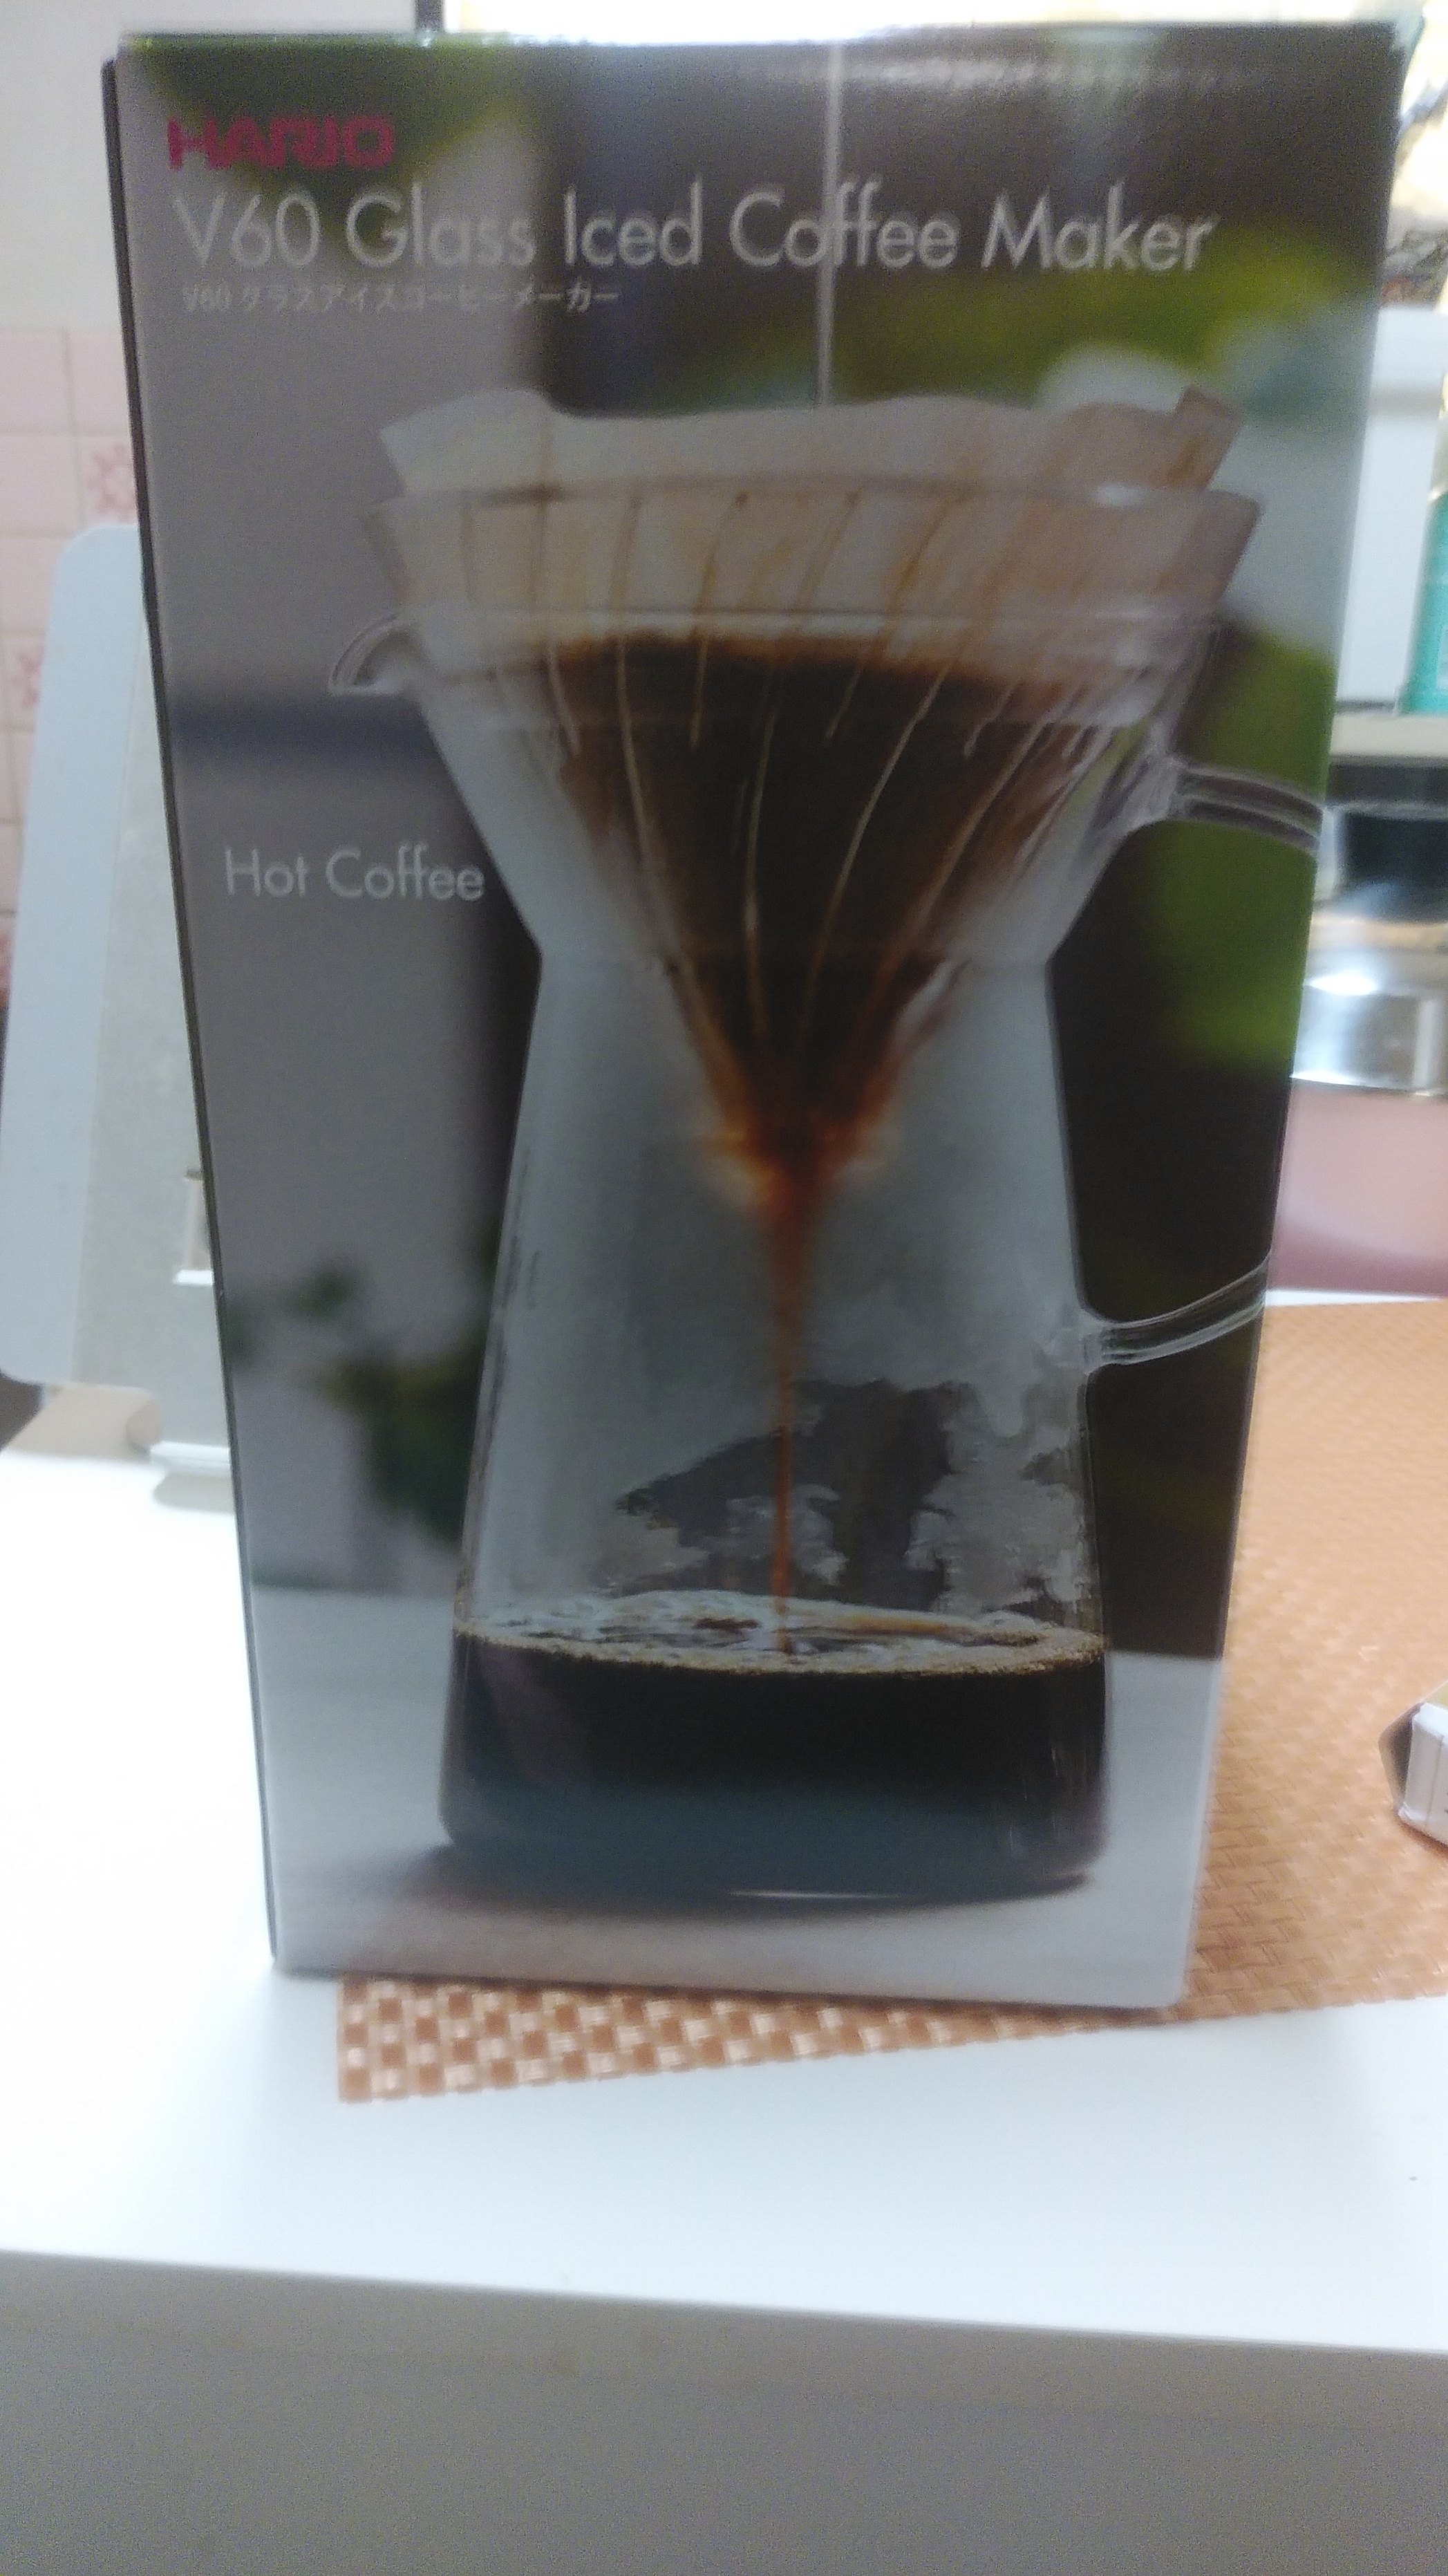 HARIO(ハリオ) マルチ V60 グラス アイスコーヒー メーカー VIG-02Tの良い点・メリットに関するまいかるさんの口コミ画像1